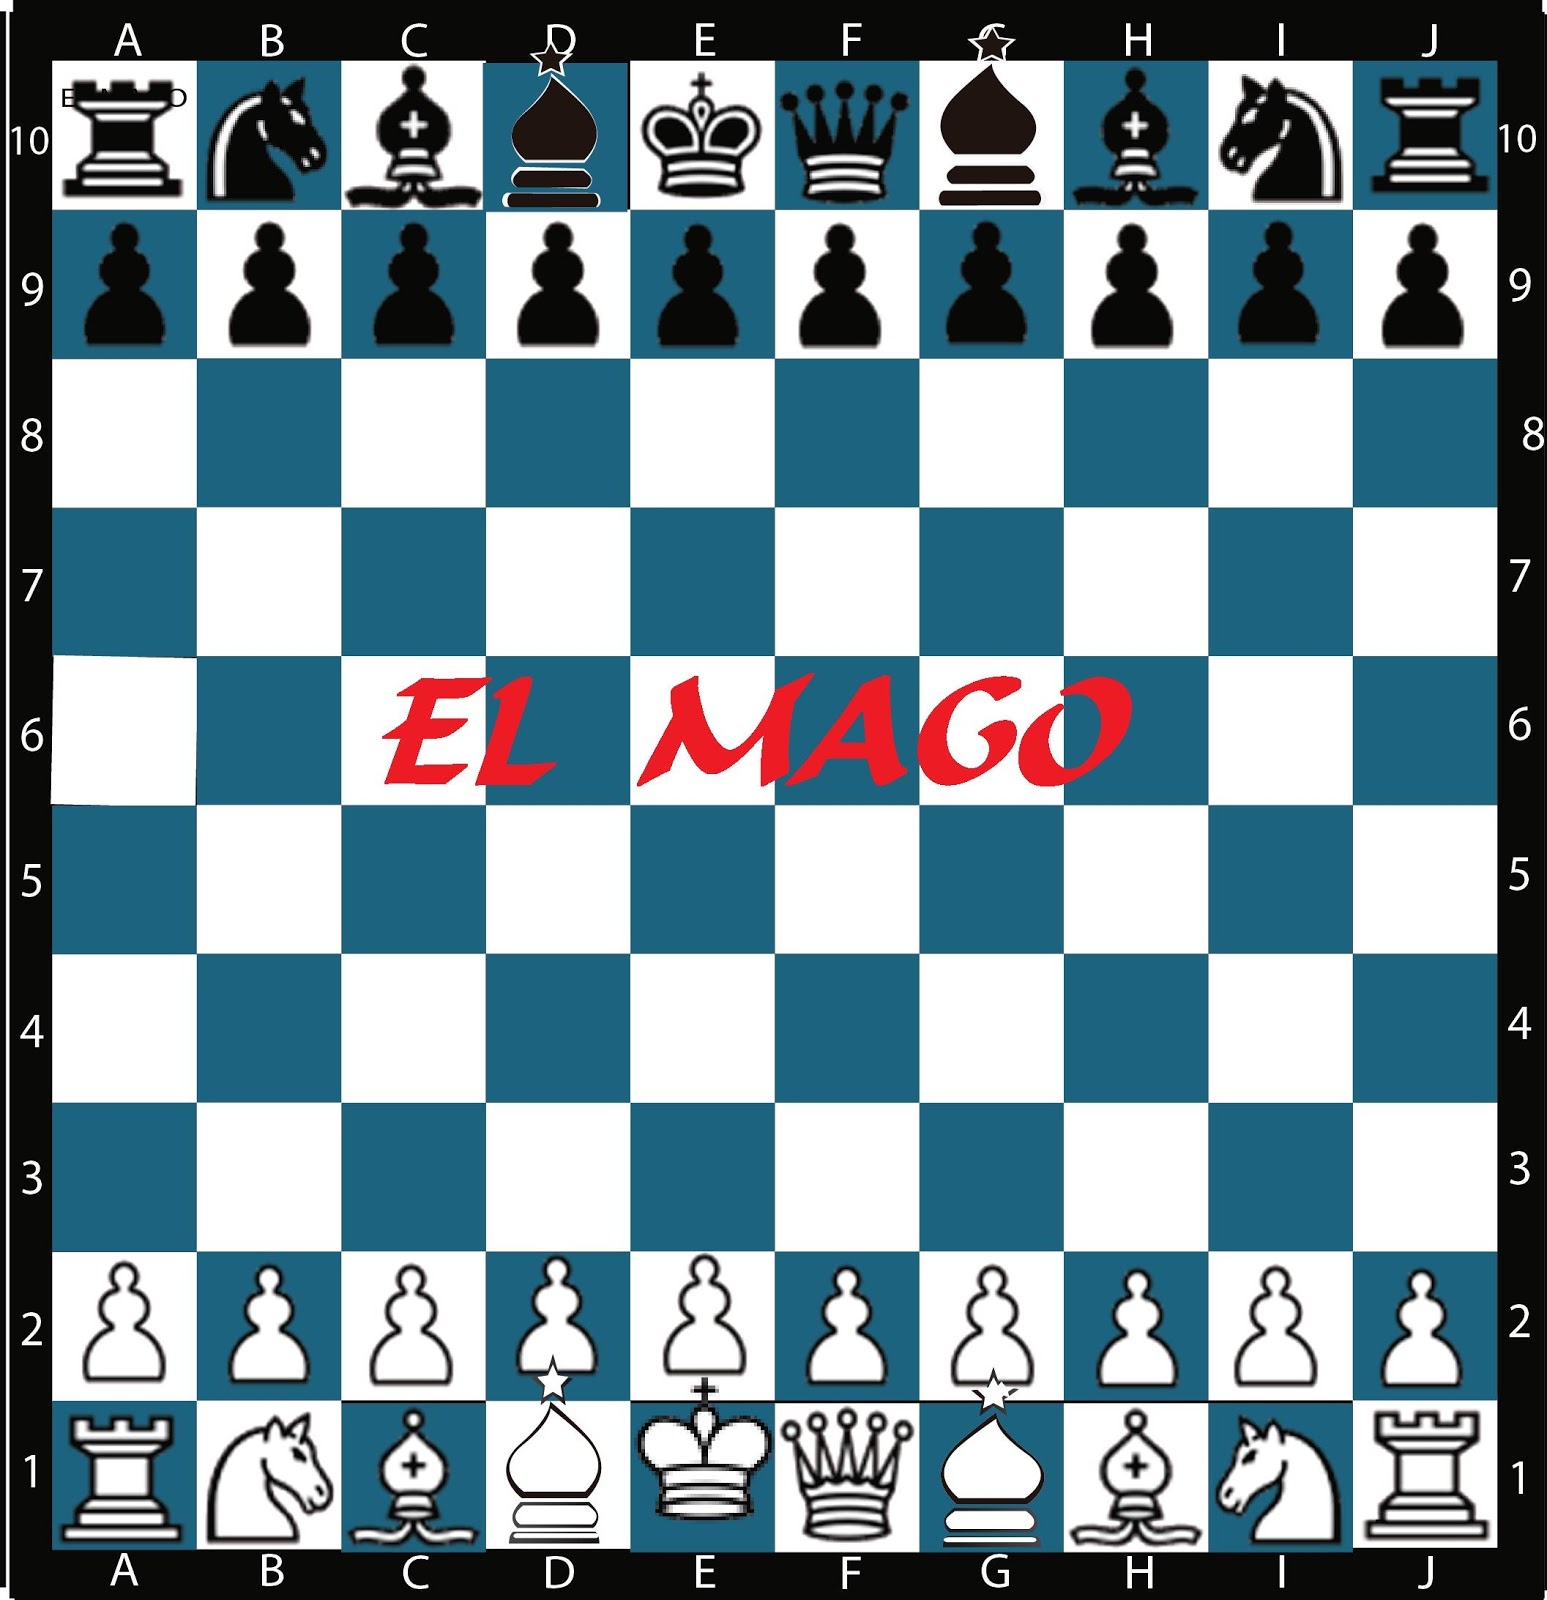 Conoces la simbología oculta del ajedrez?